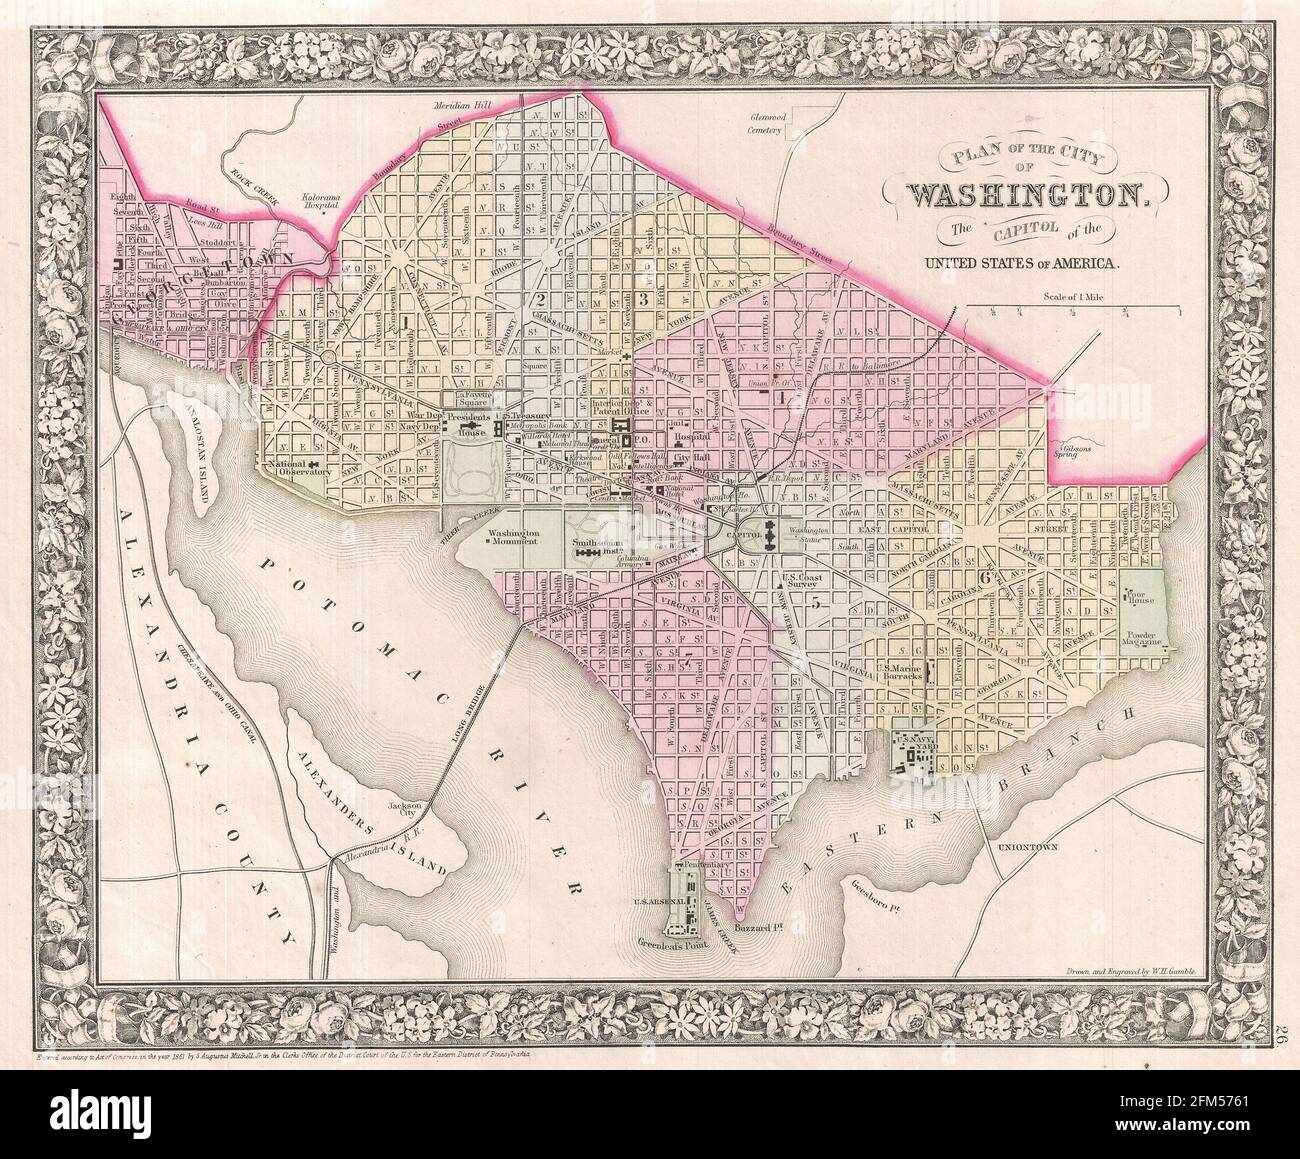 Kupferstich-Landkarte von Washington DC aus dem 19. Jahrhundert. Alle Karten sind wunderschön farbig und illustriert und zeigen die Welt zu dieser Zeit. Stockfoto